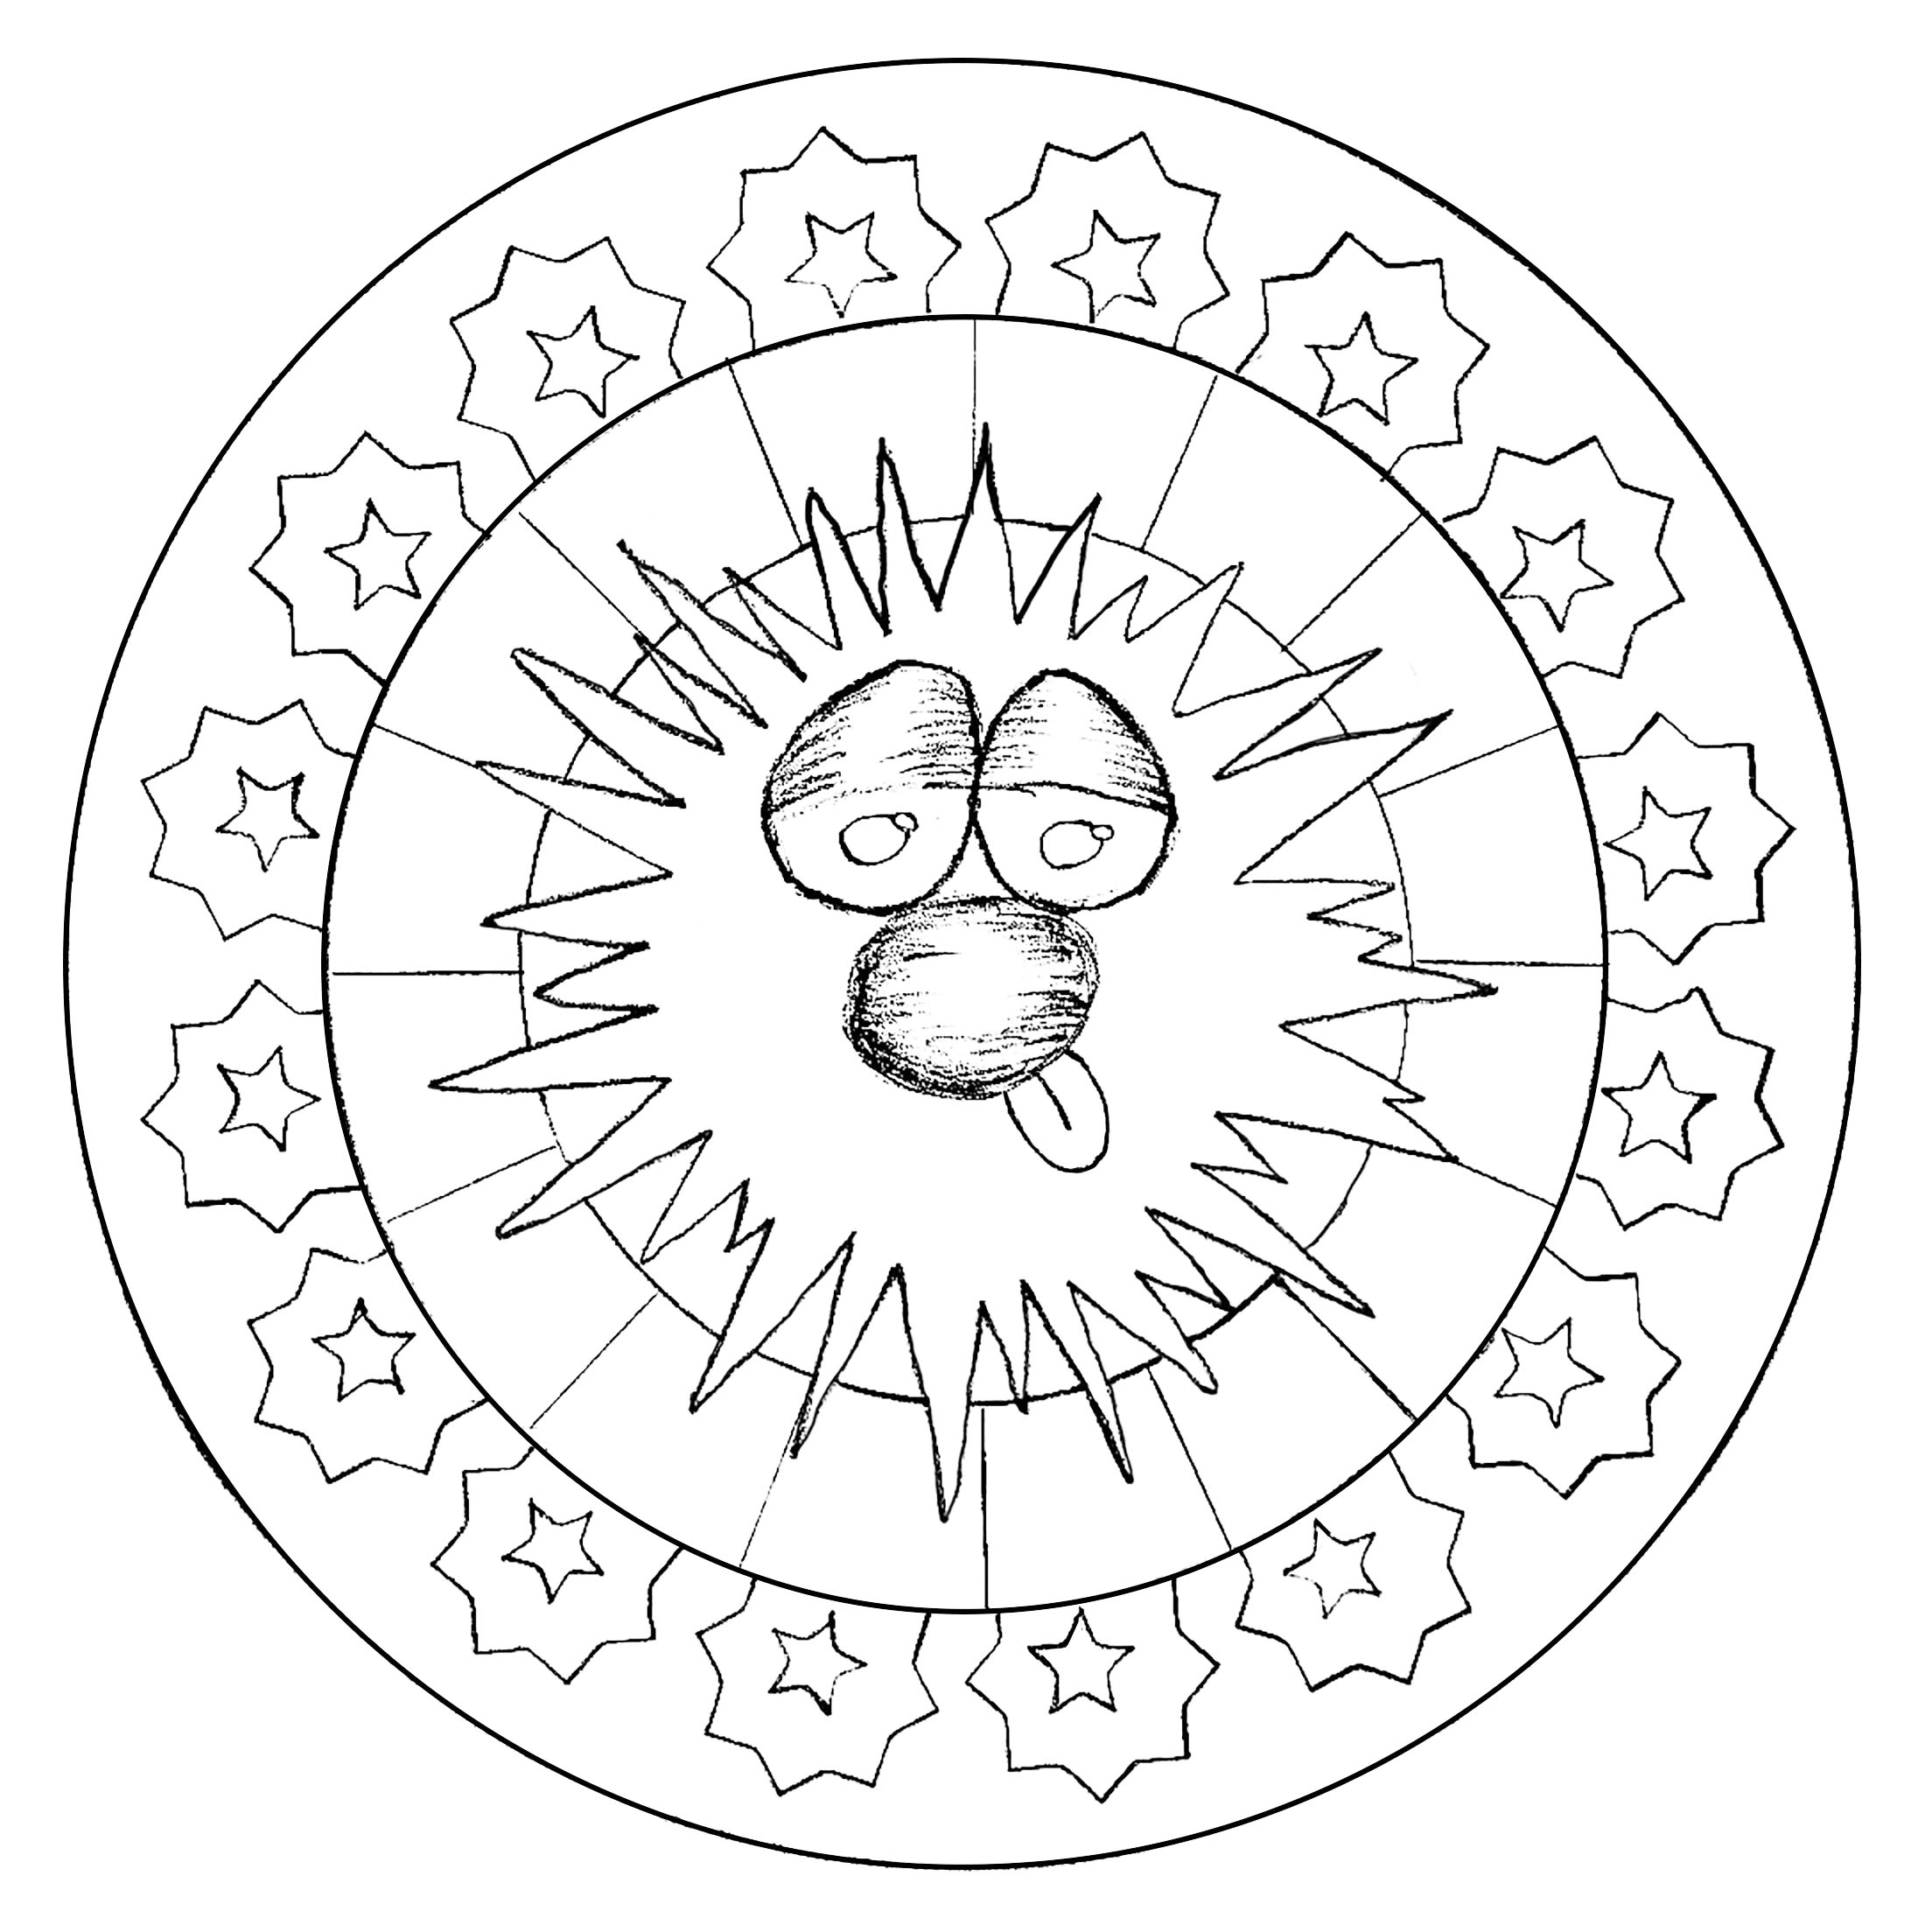 Lustige Figur inmitten eines Mandalas. Eine Zeichnung, die exklusiv für die Website erstellt wurde!